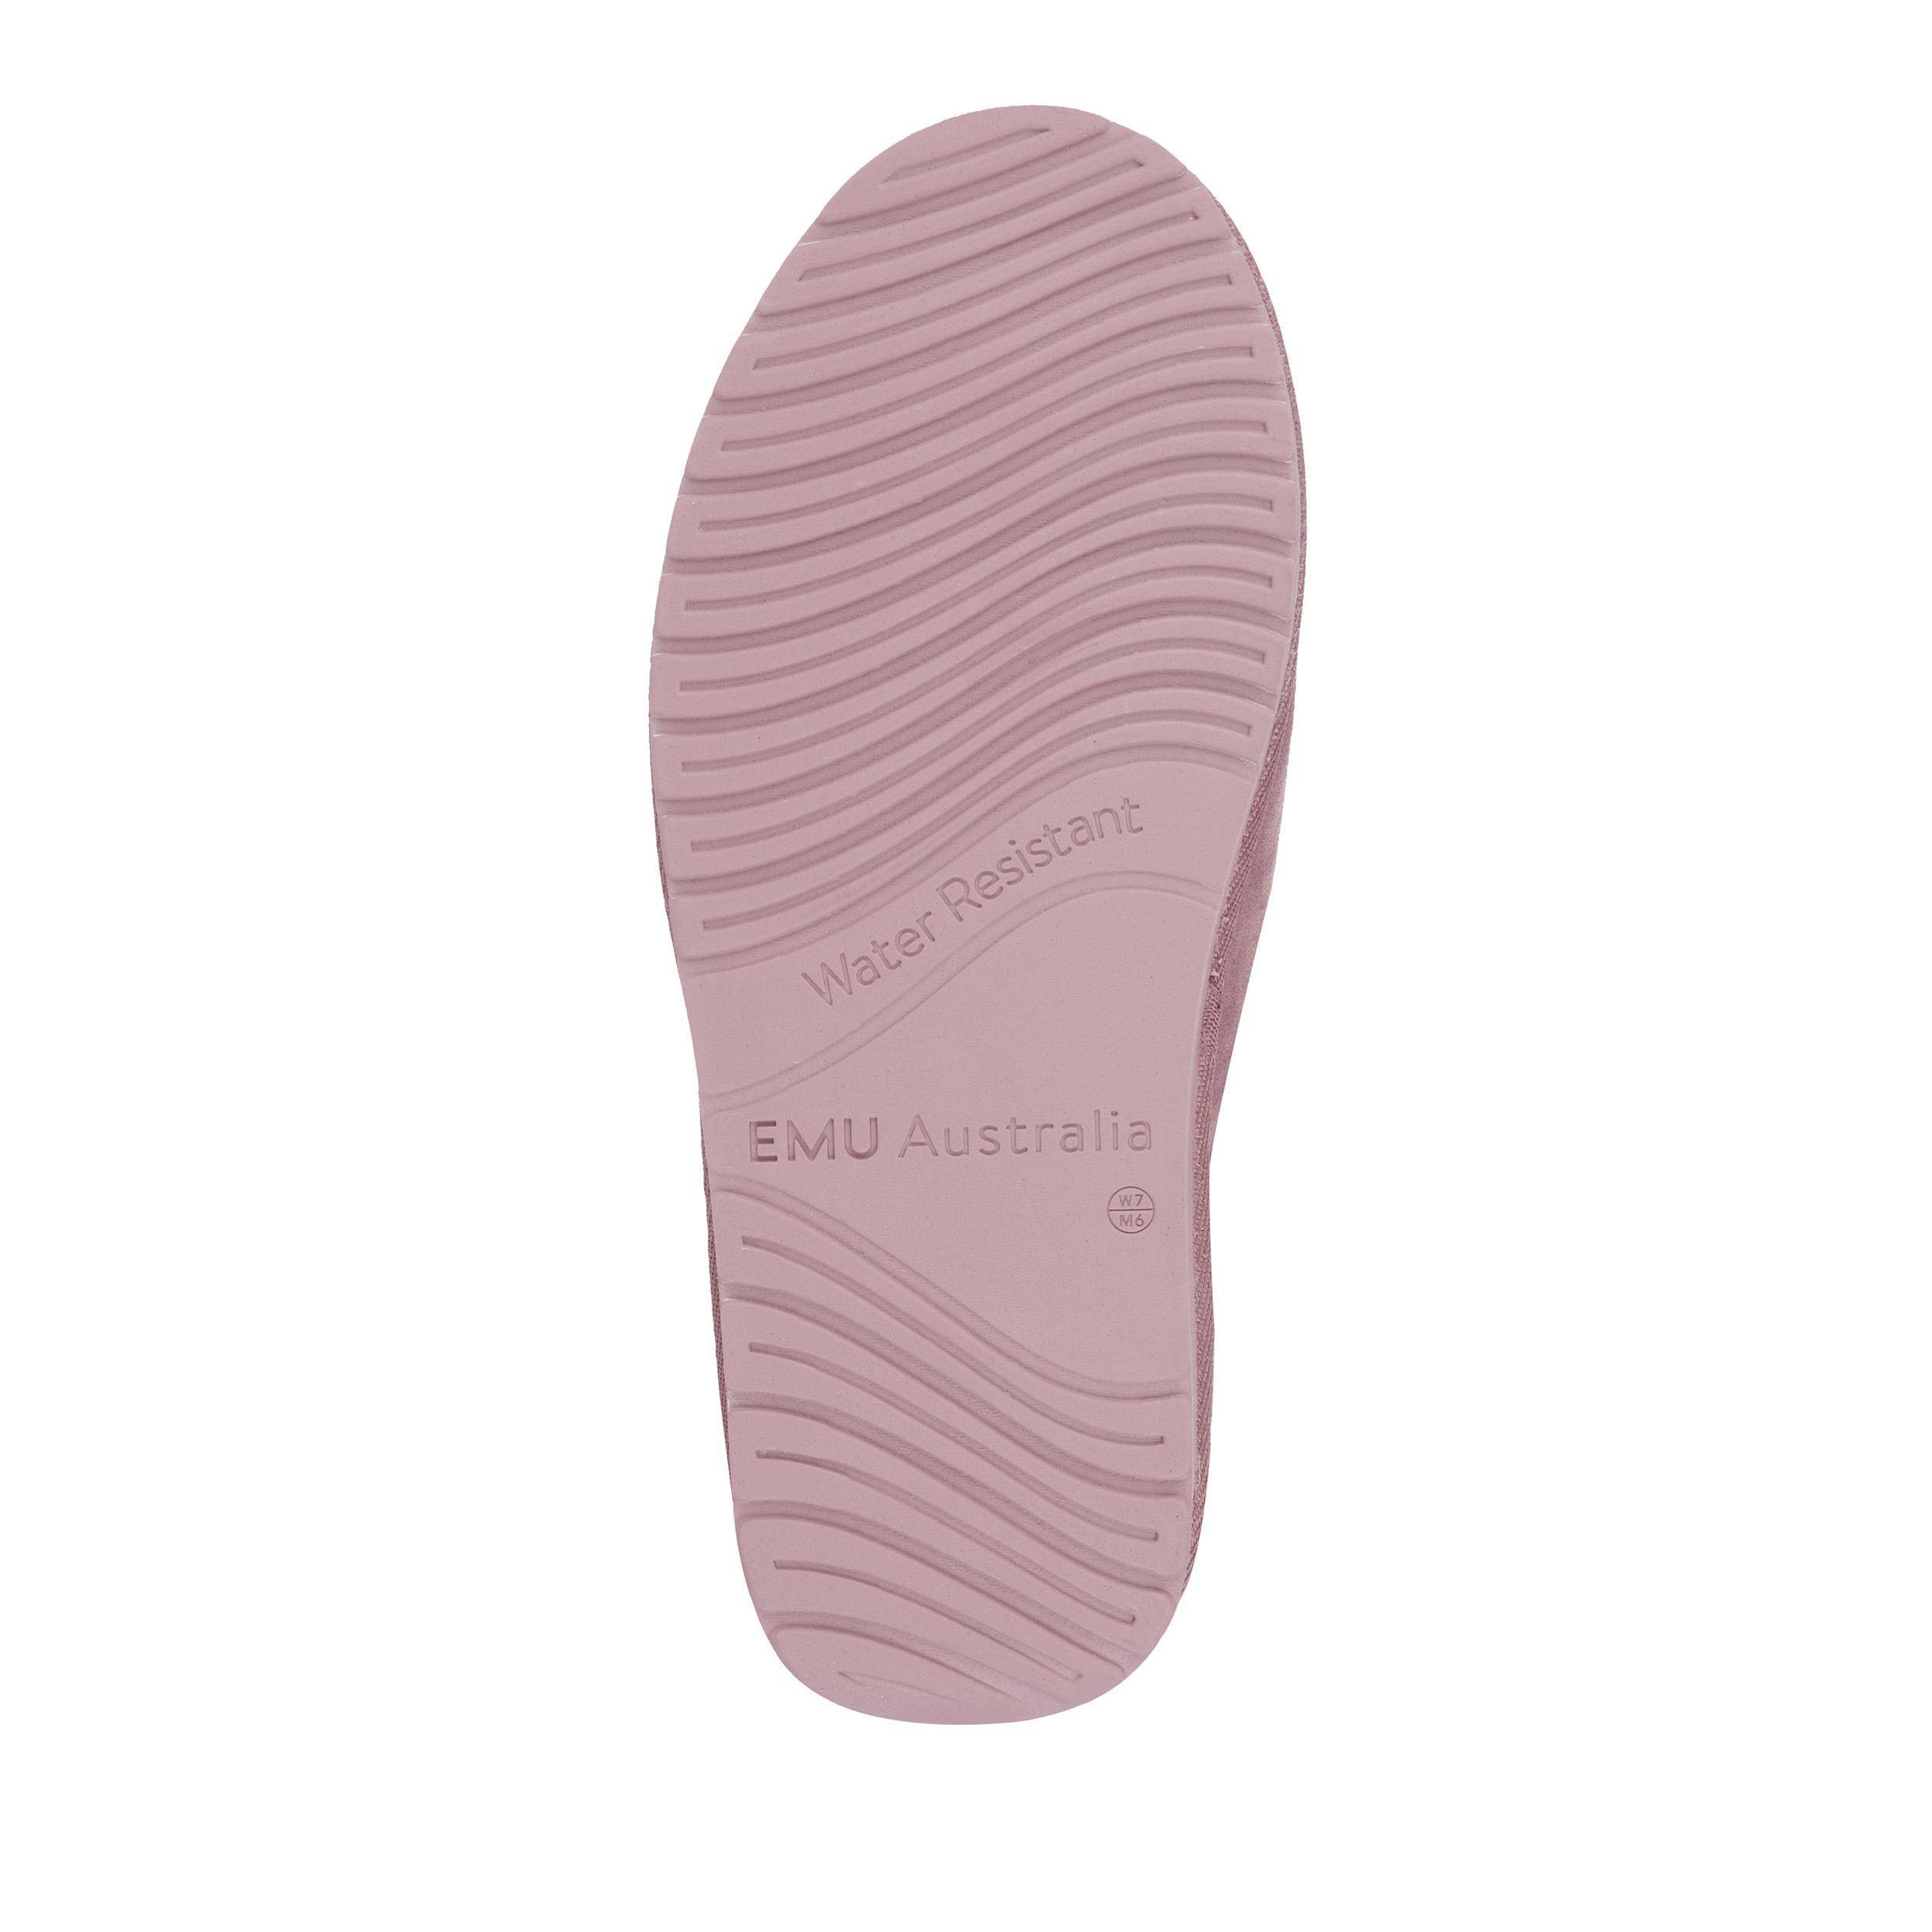 Женские ботинки из овчины (угги) EMU Australia (Rigel W12600), розовые, цвет розовый, размер 39 - фото 6